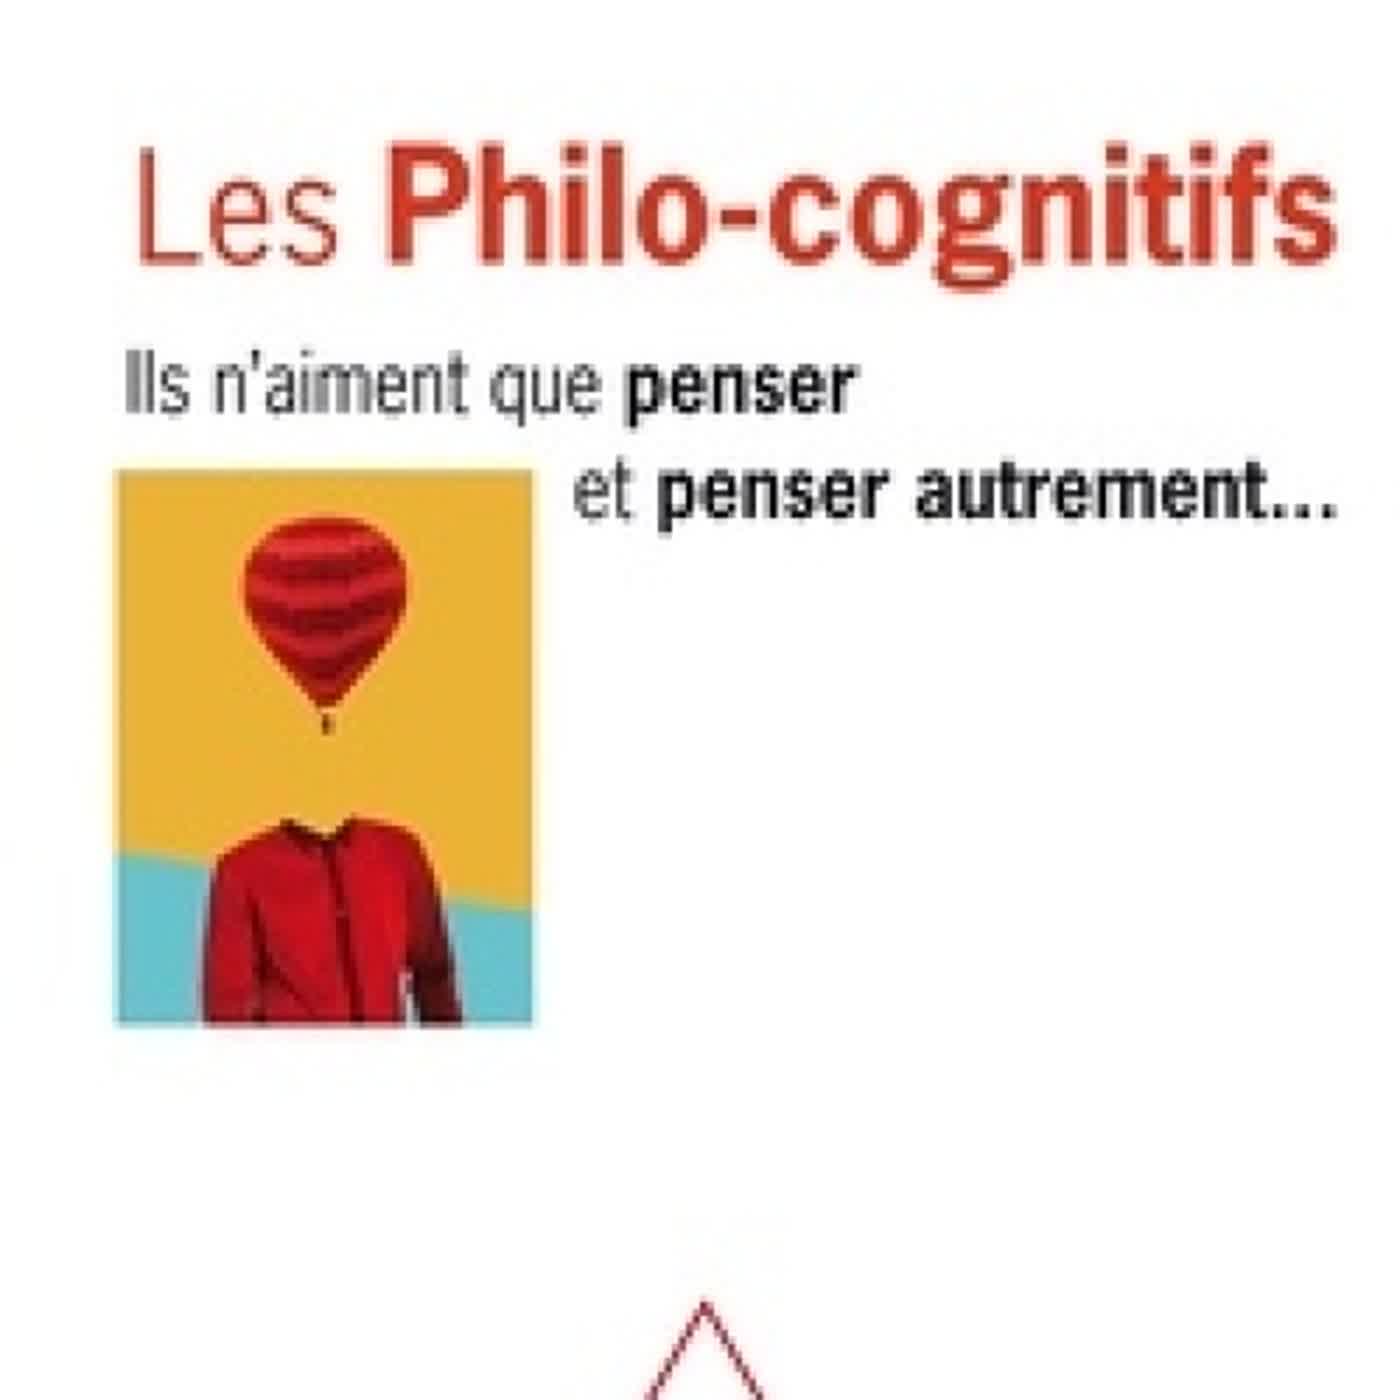 Download Pdf Les philo-cognitifs  - Ils n'aiment que penser et penser autrement...